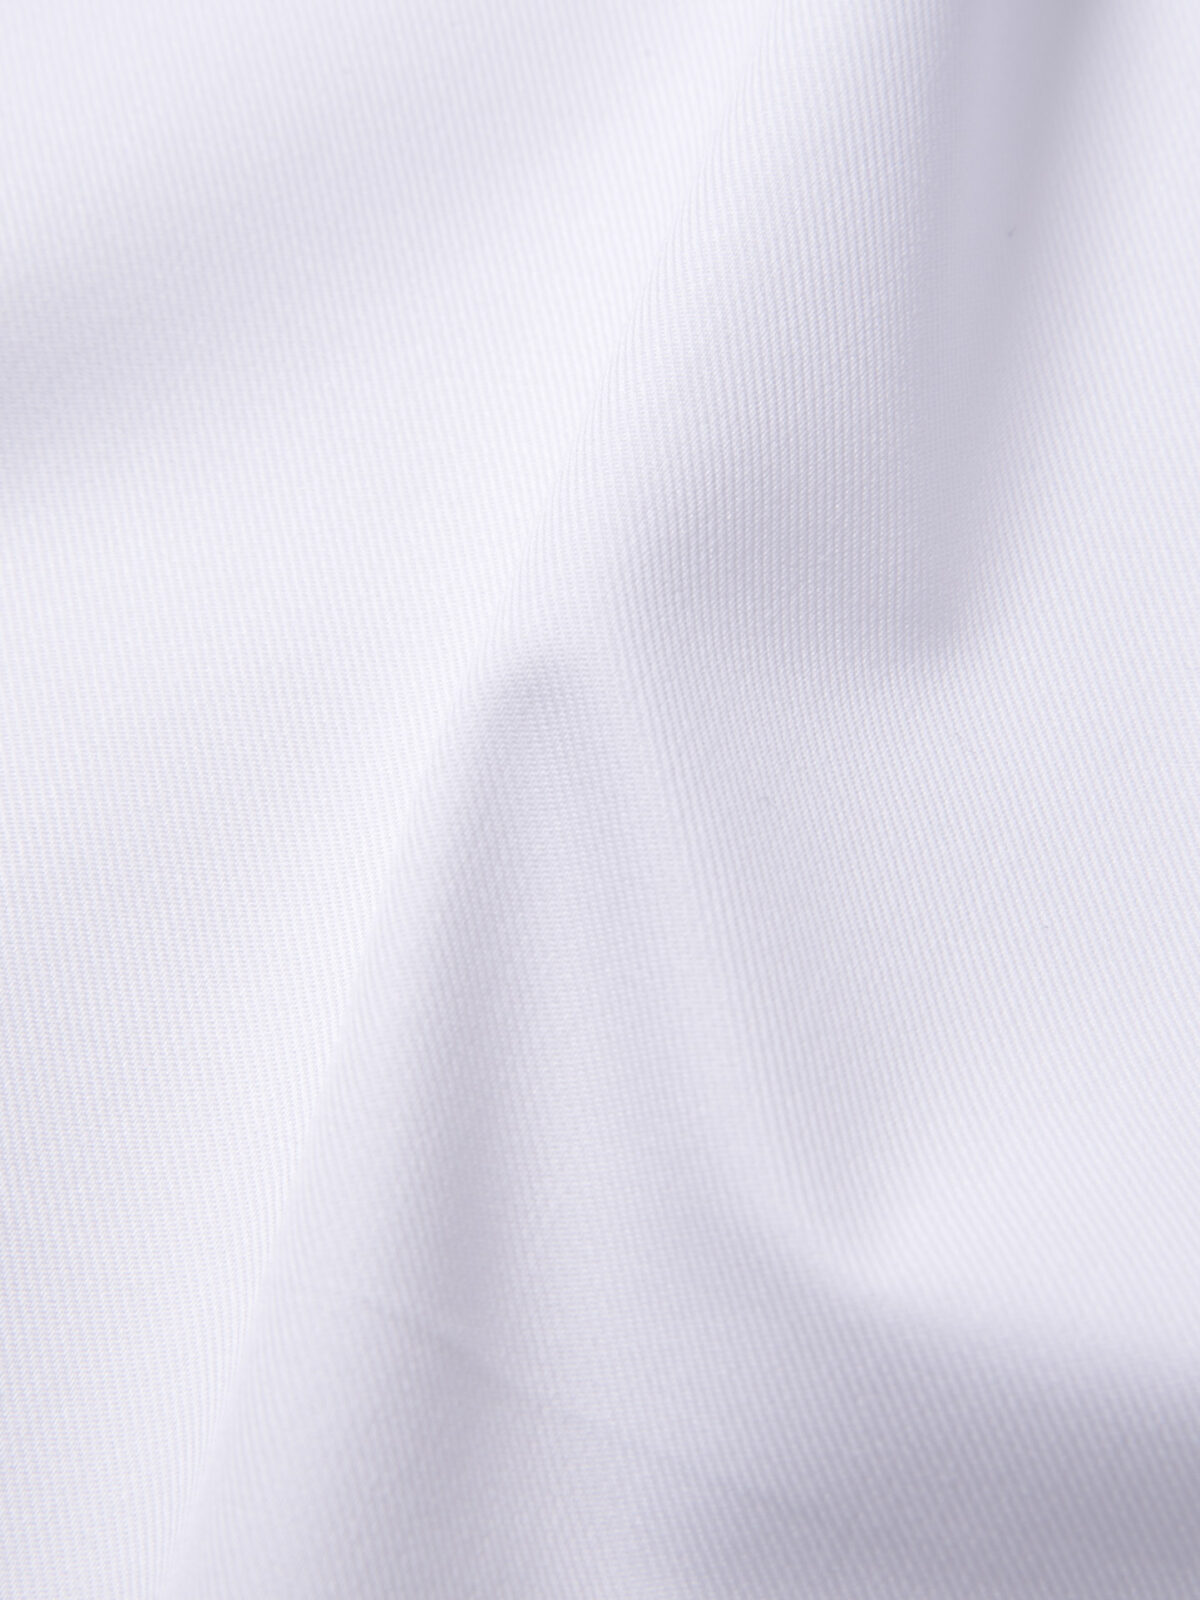 Thomas Mason White 3-Ply Regal Twill Shirts by Proper Cloth